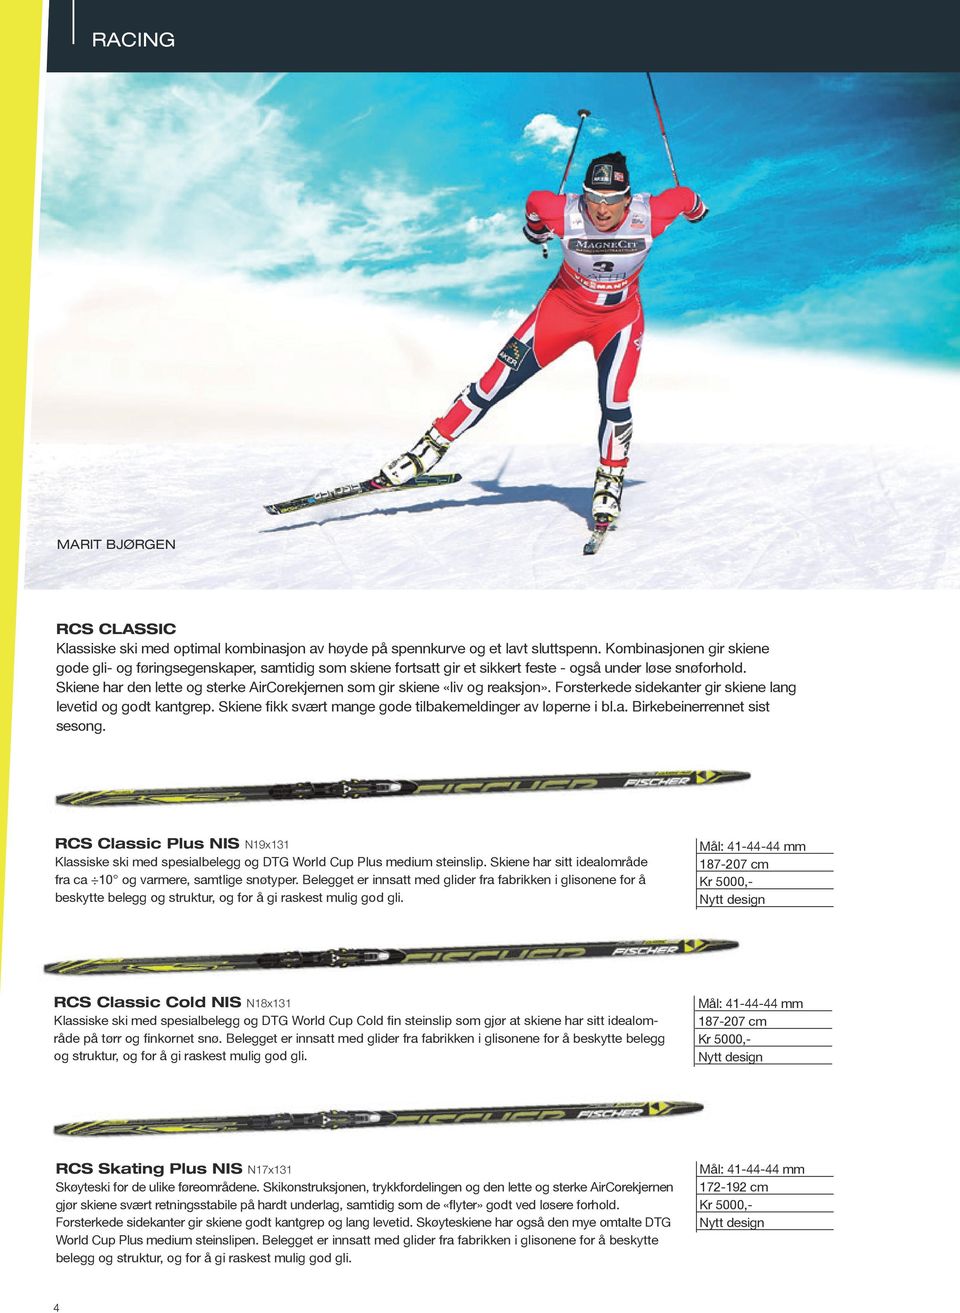 Skiene har den lette og sterke AirCorekjernen som gir skiene «liv og reaksjon». Forsterkede sidekanter gir skiene lang levetid og godt kantgrep.